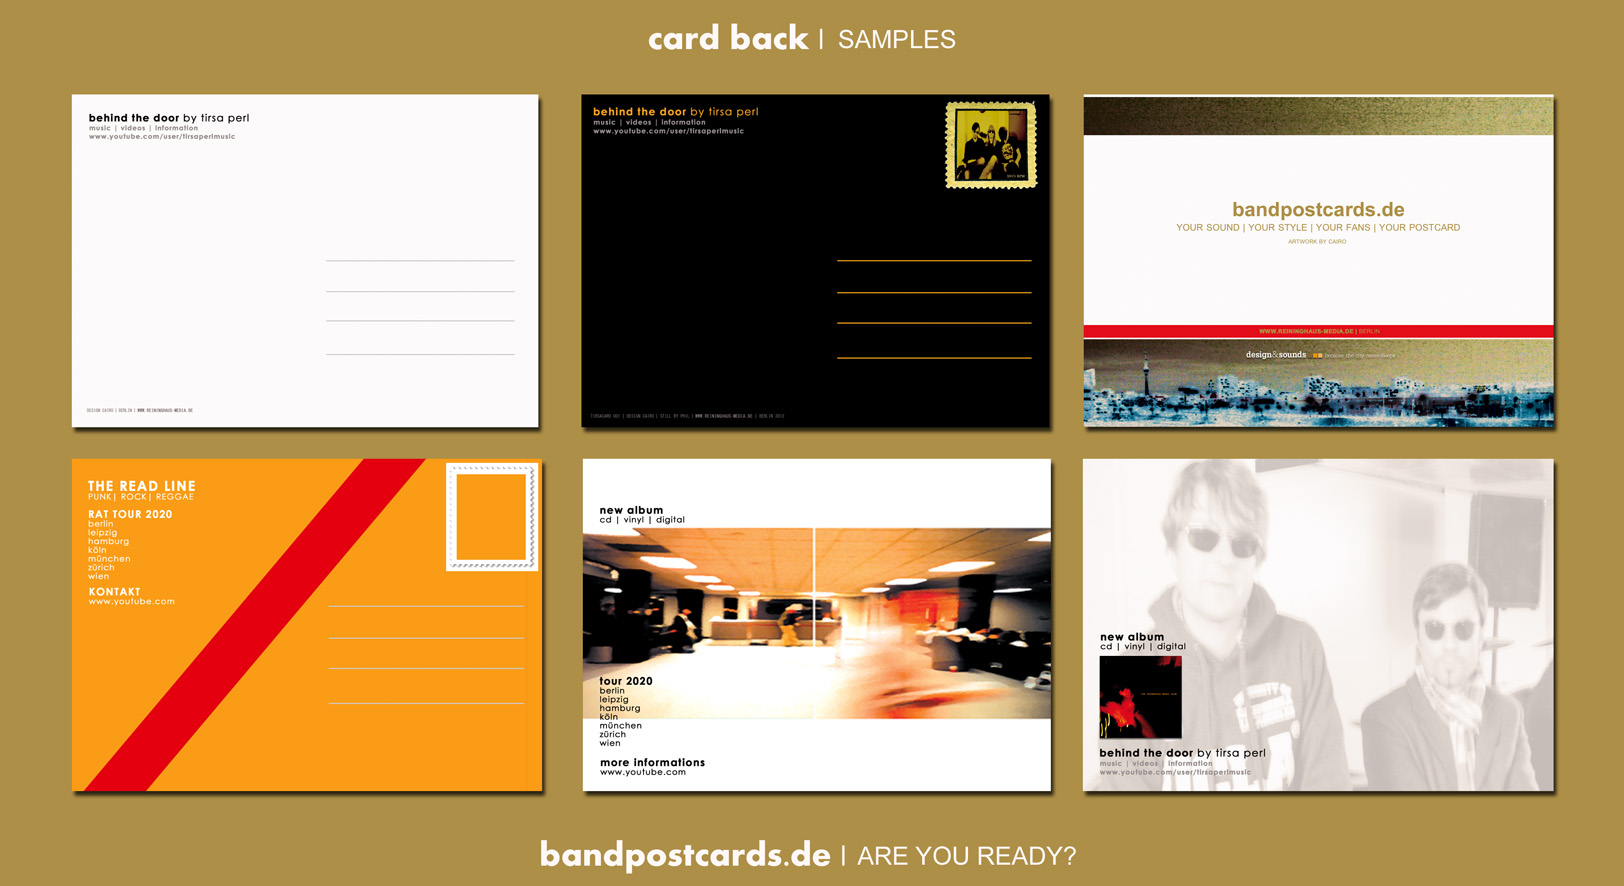 bandpostcards_cardback_kai reininghaus